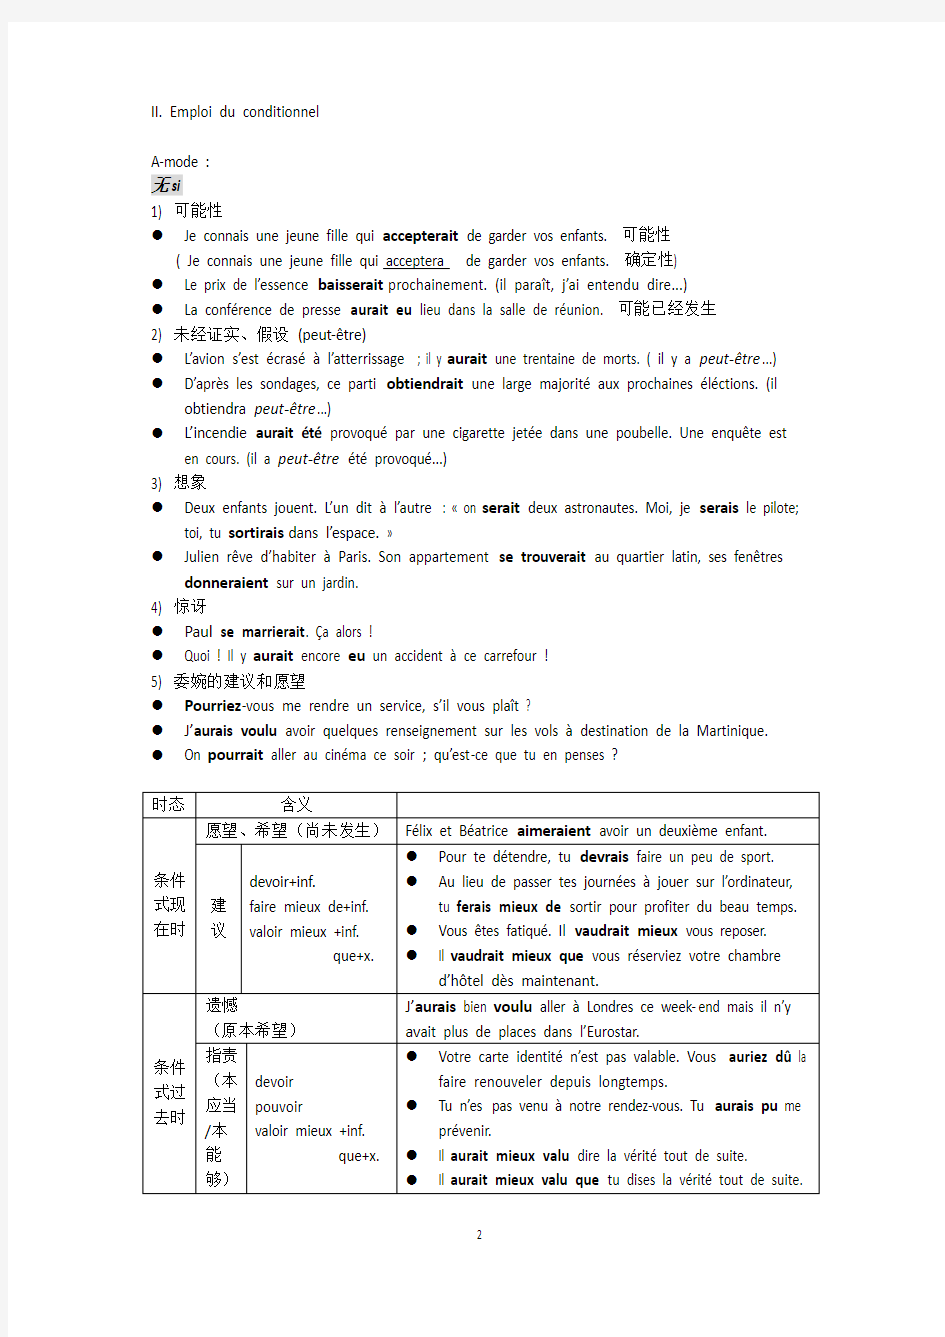 法语条件式用法(+练习12题)